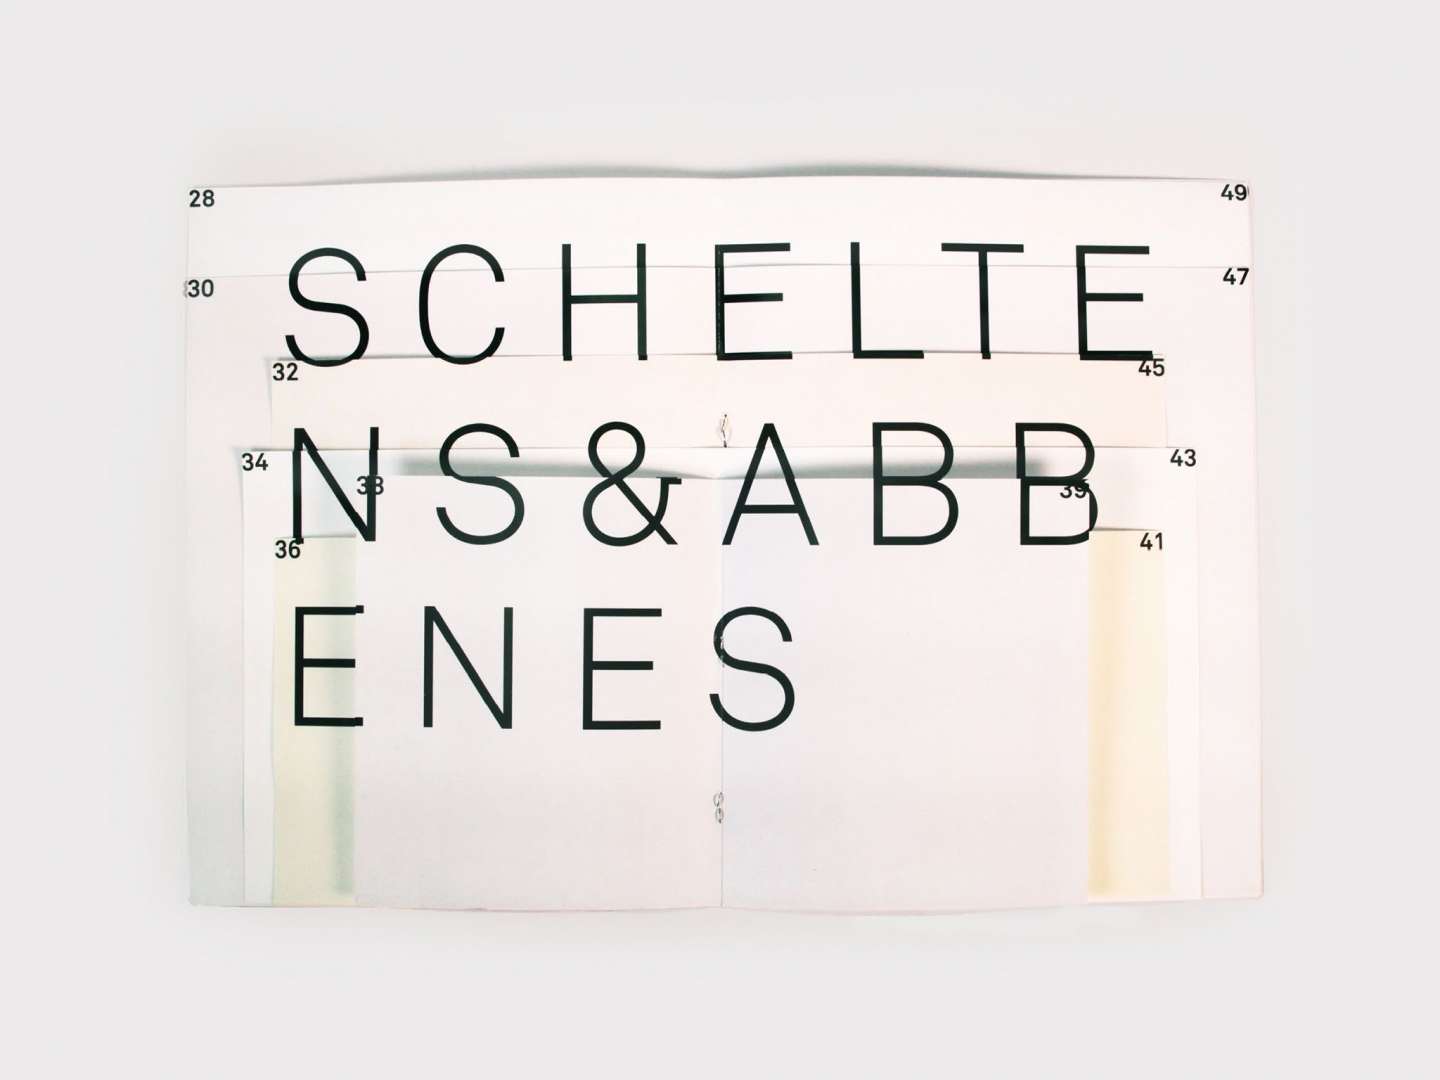 Scheltens & Abbenes Book